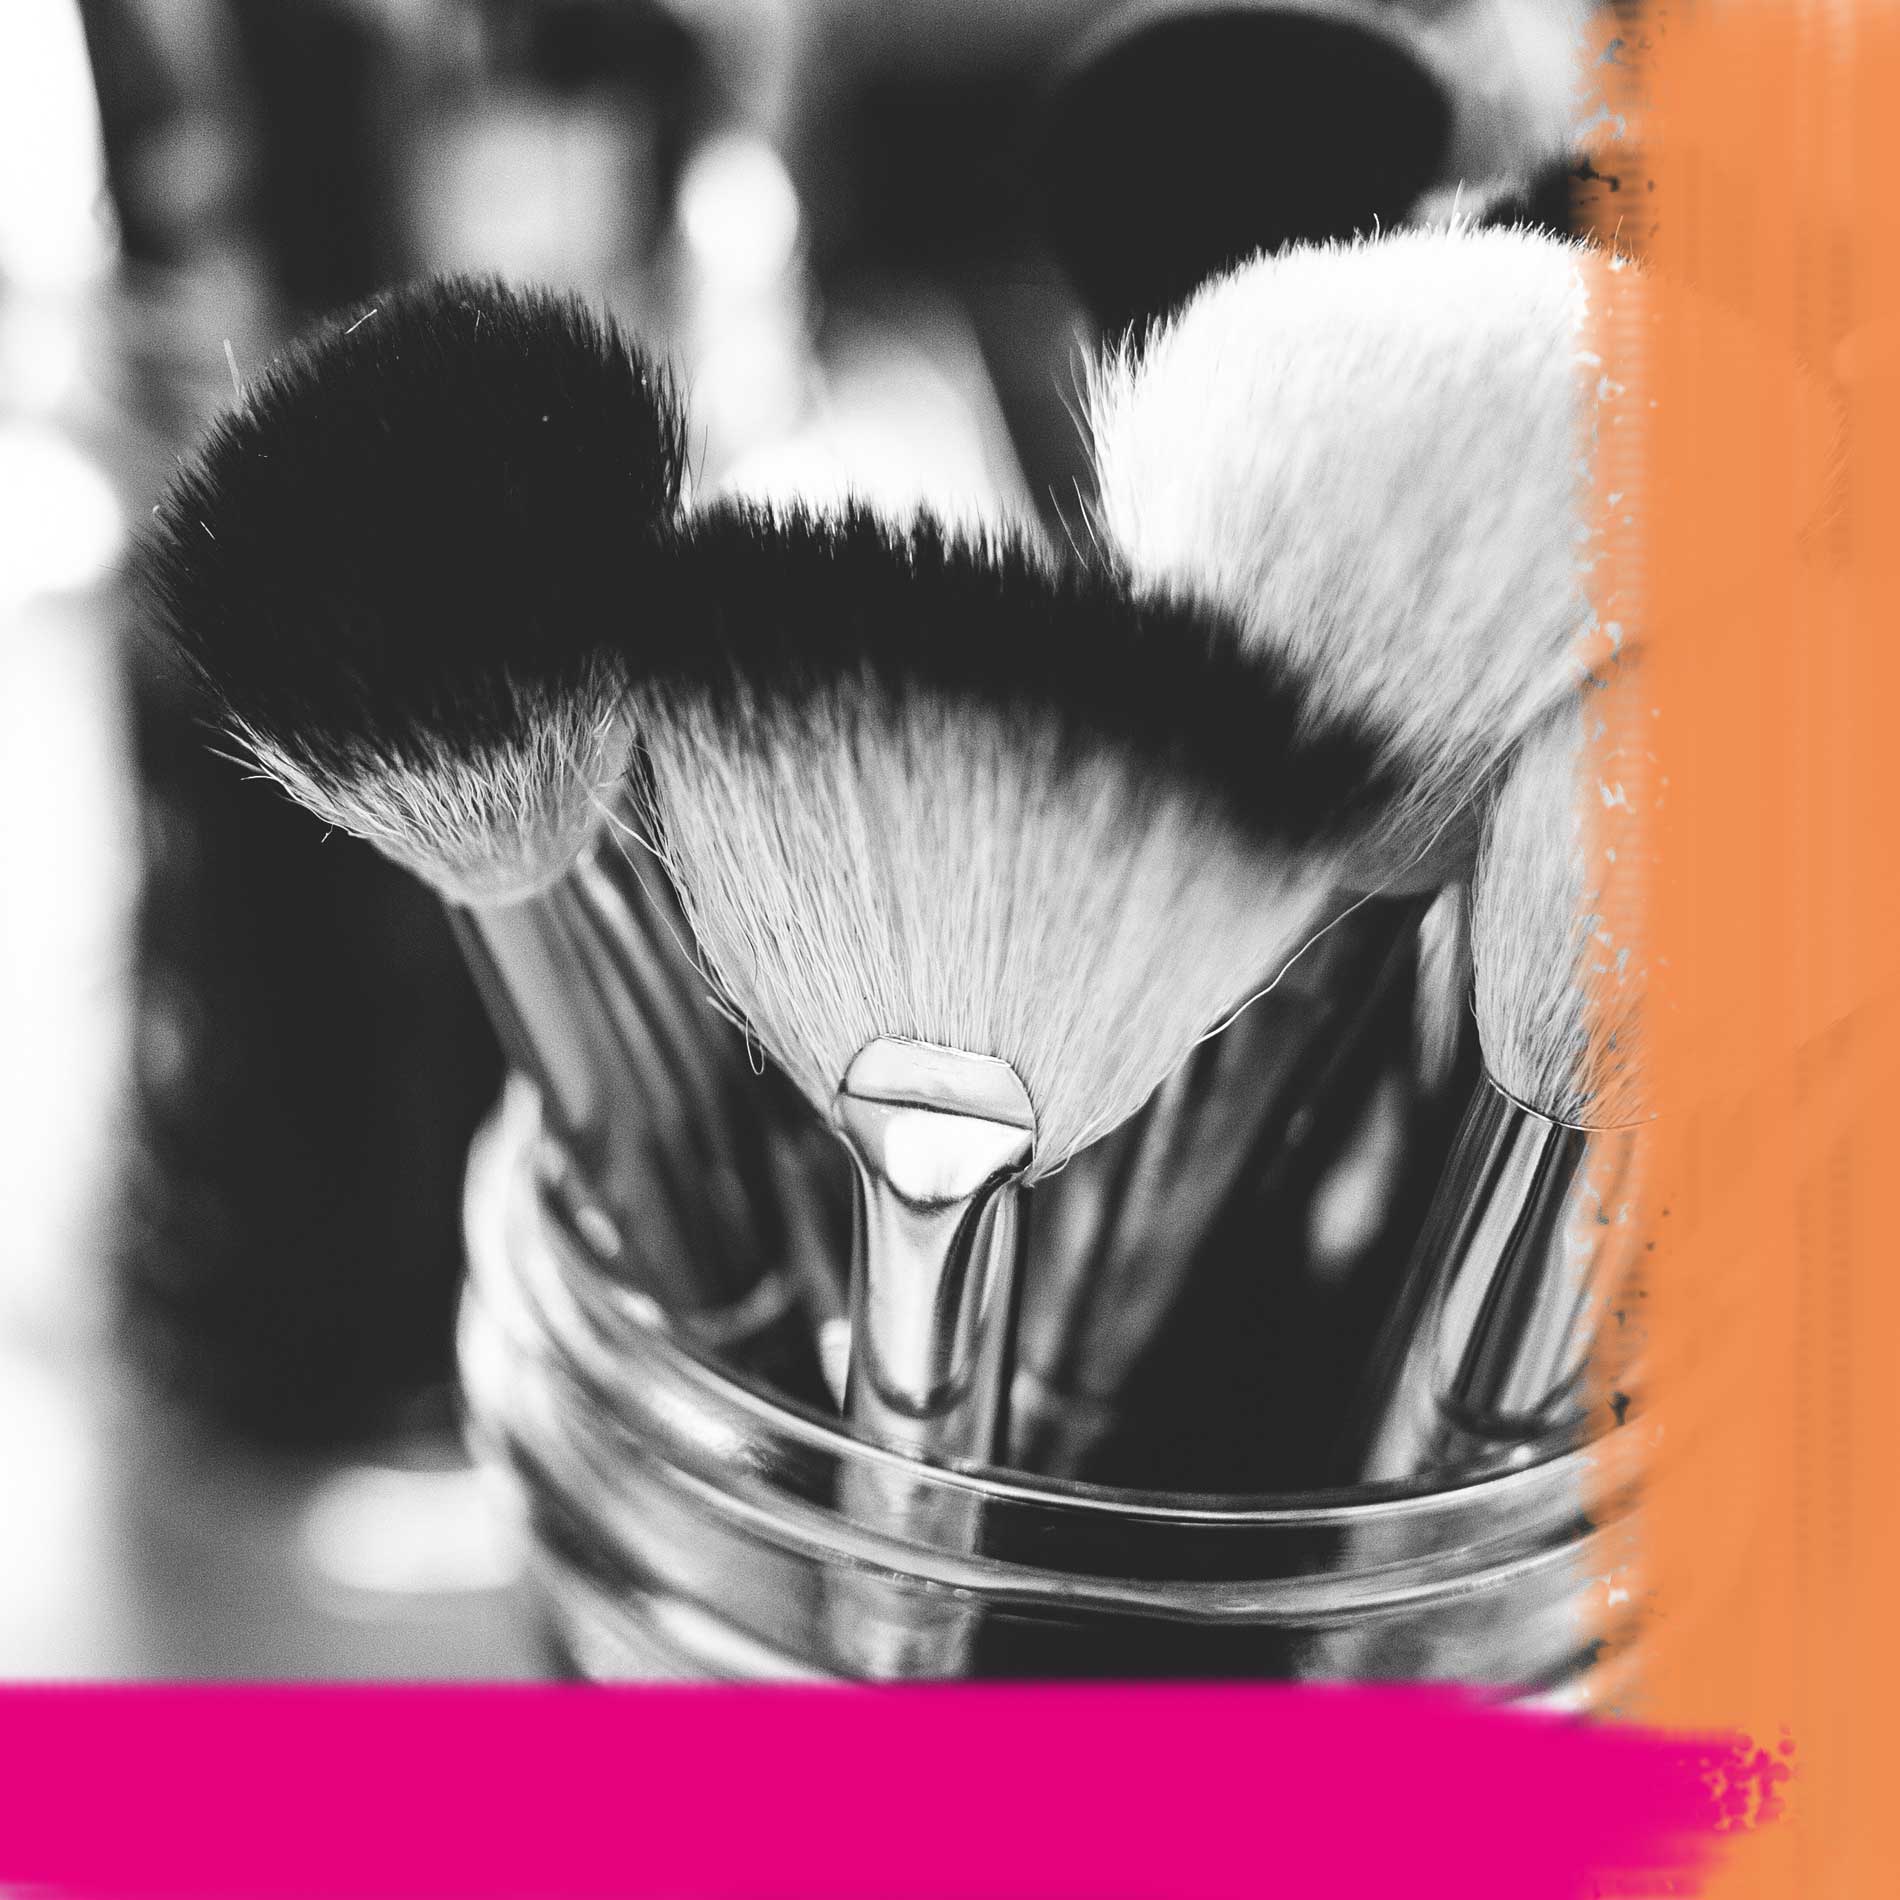 Anwendung von Blush, Rouge verwenden, Blush benutzen, Make-up Tipps, welcher Blush für welchen Hauttyp, beauty Tipps zu Blush,